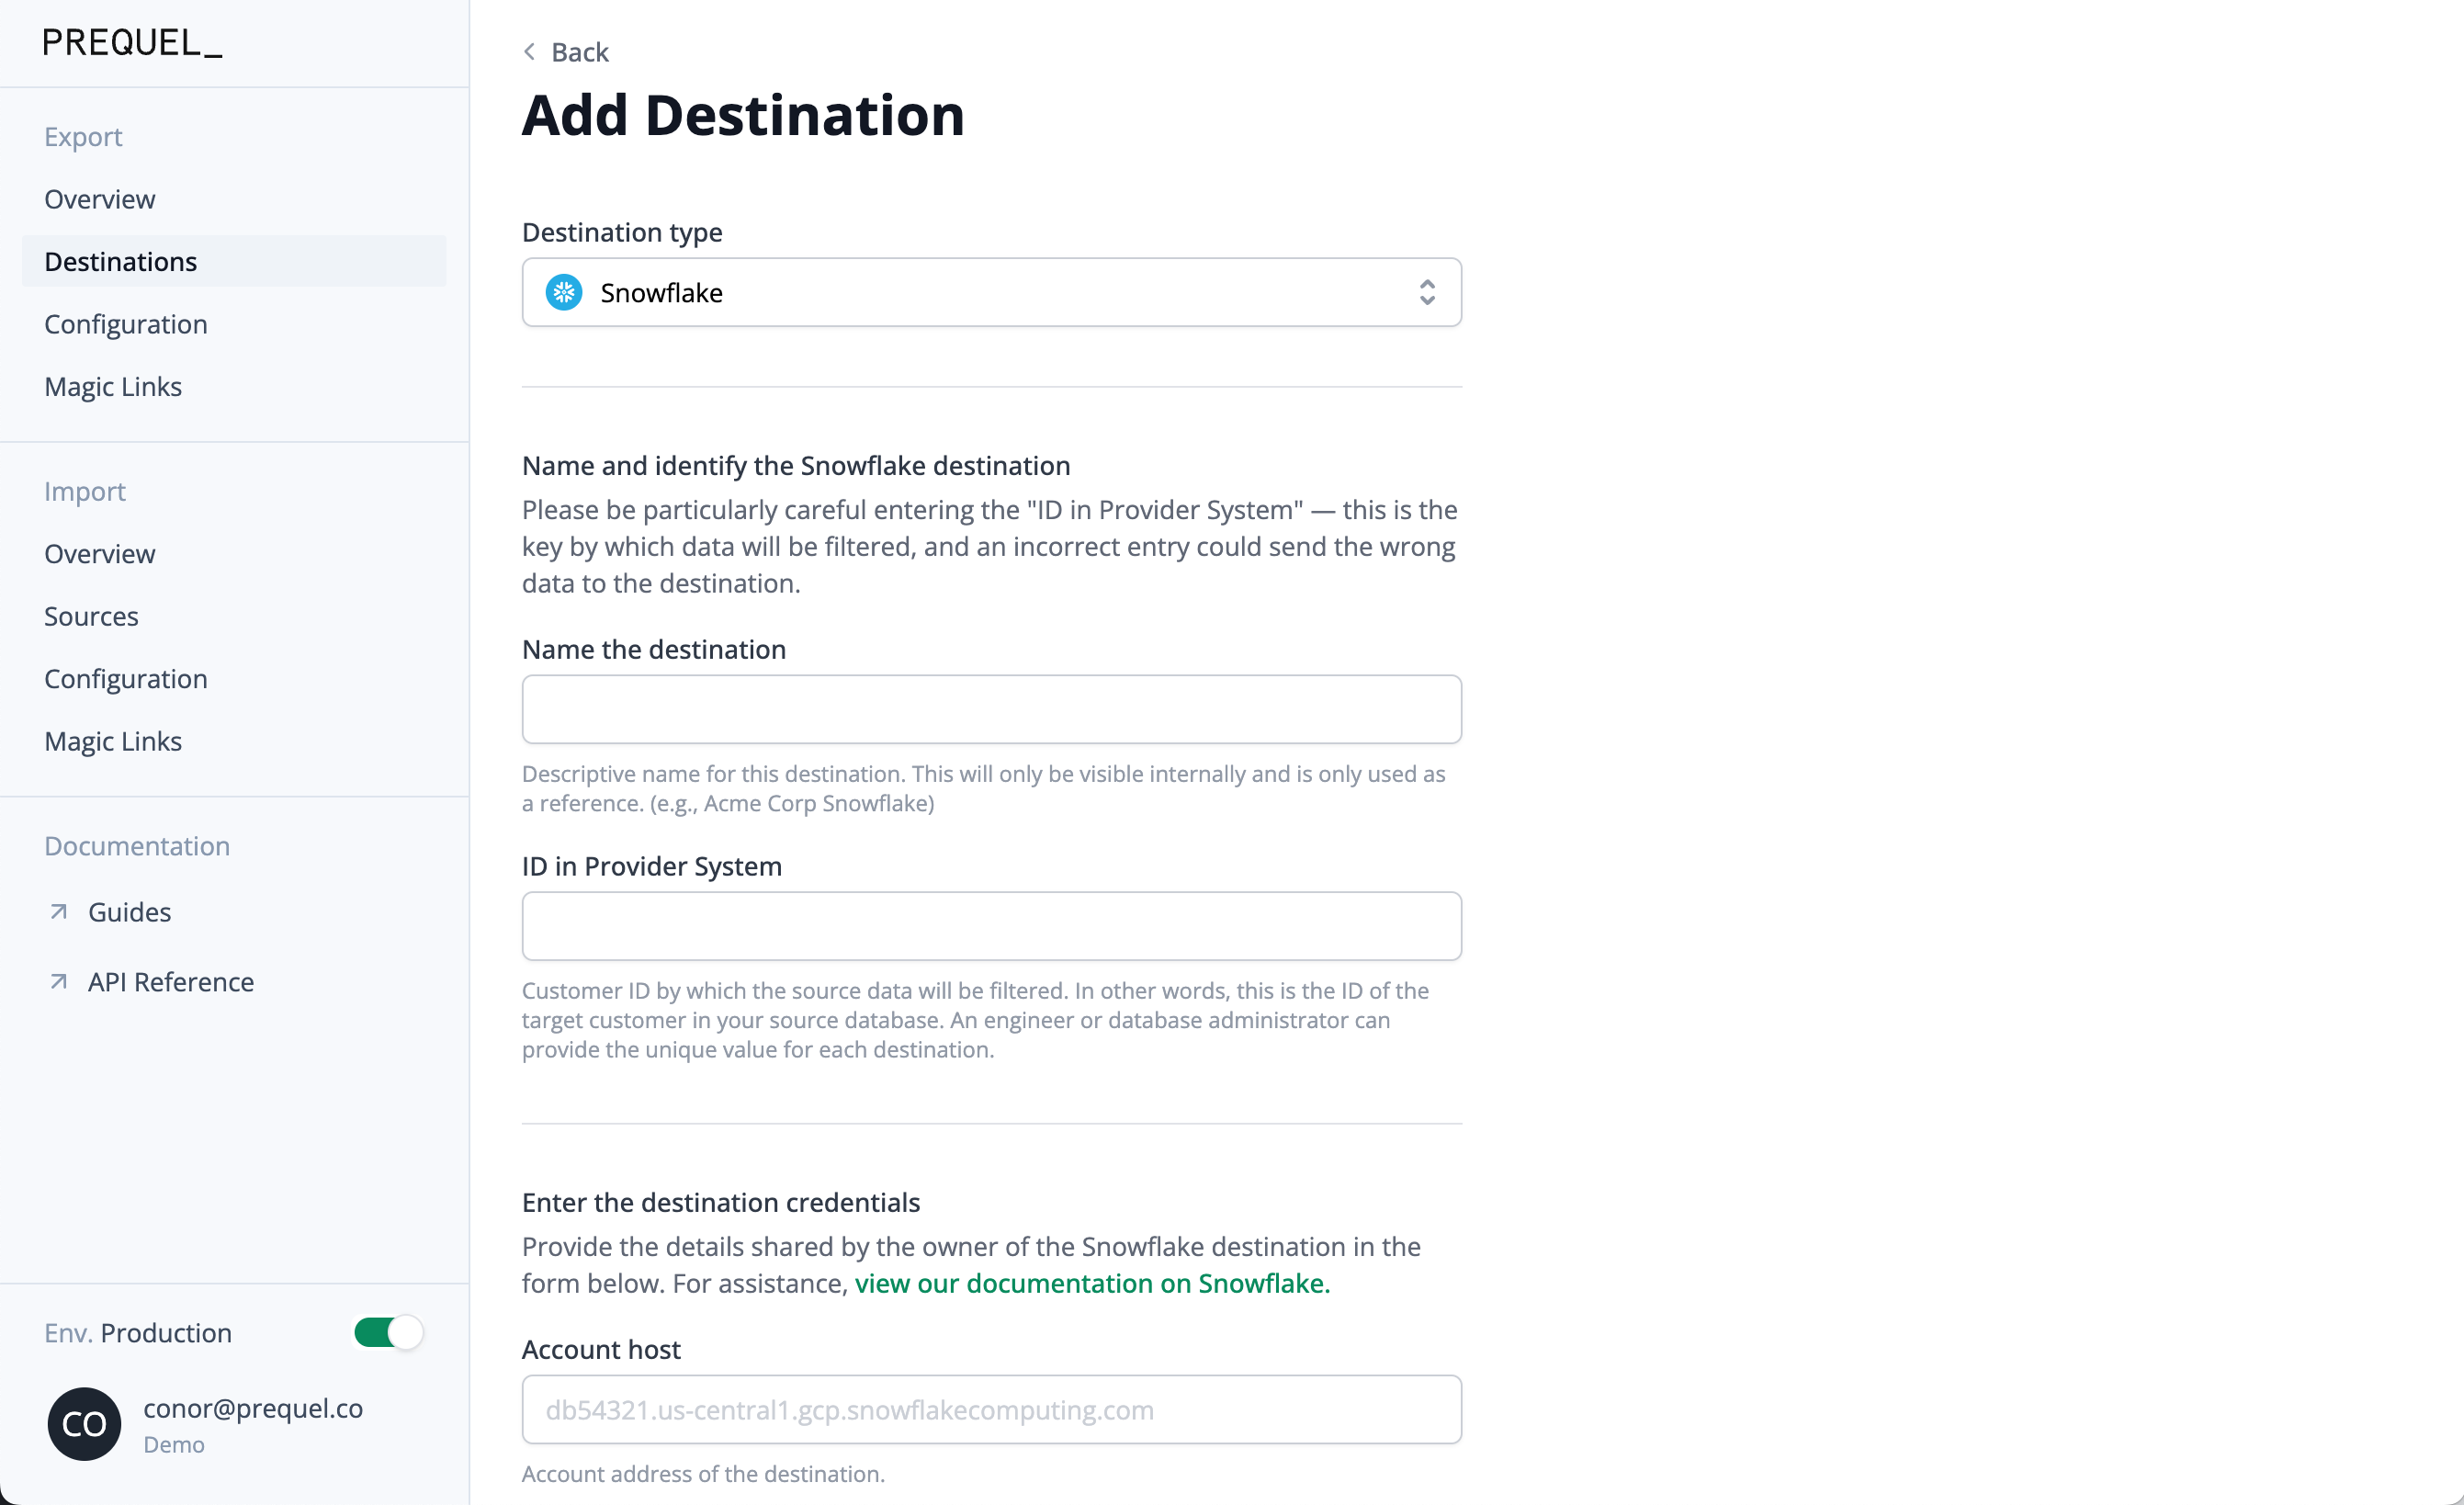 "Add Destination" flow in Admin UI